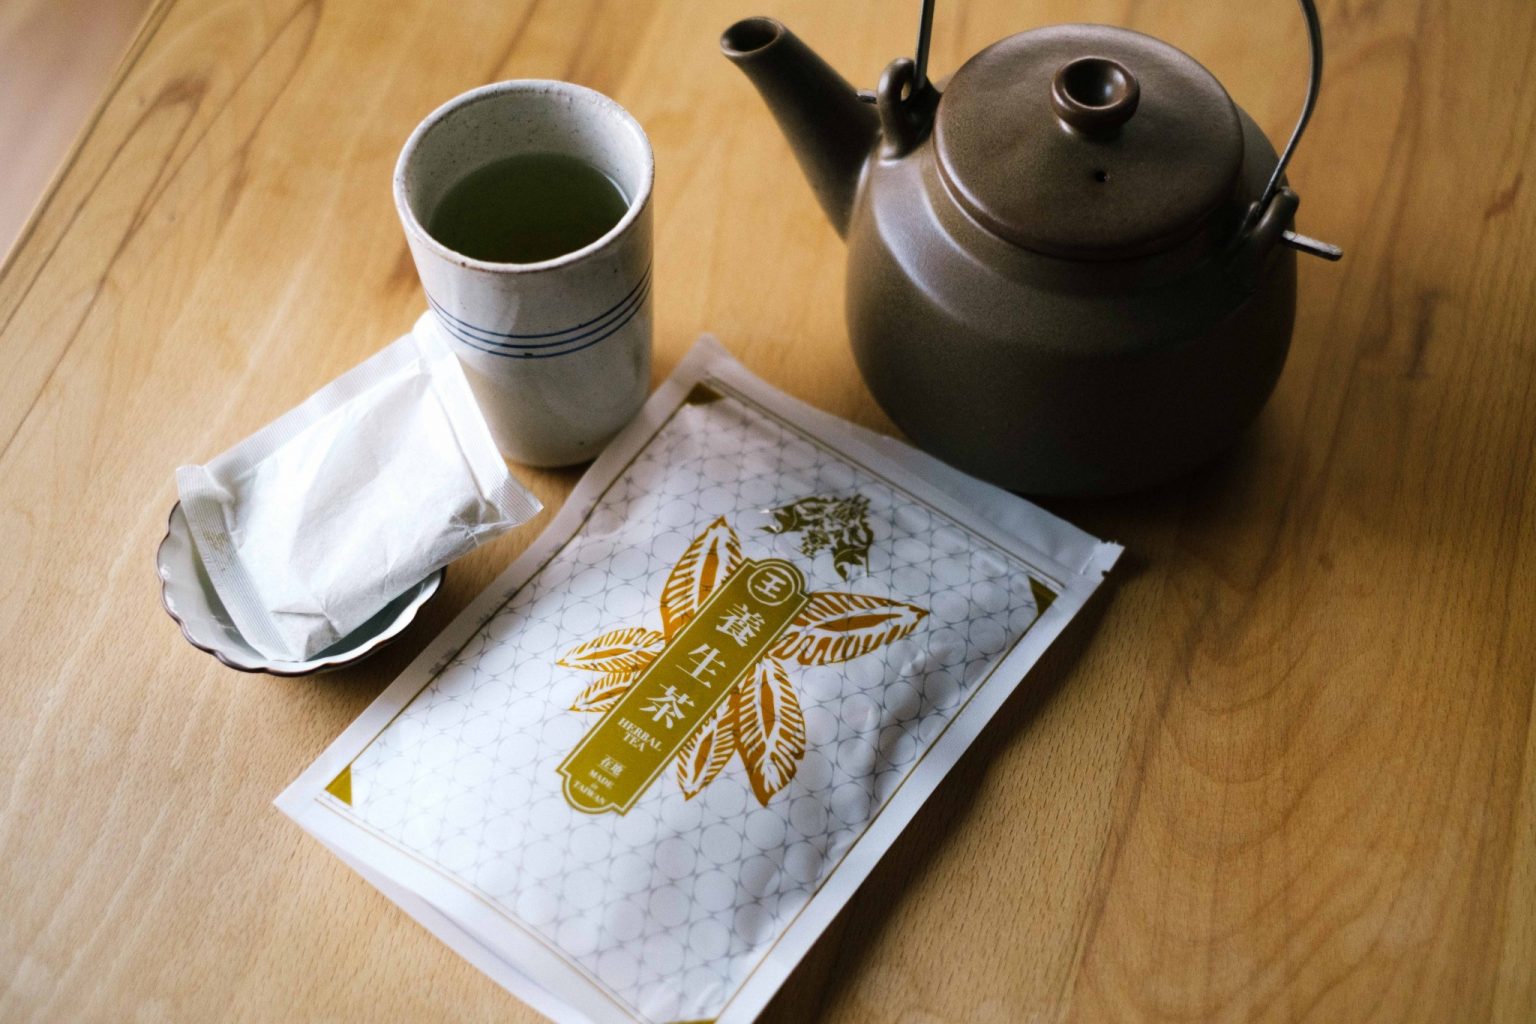 免疫力を高めるために飲むお茶を取り入れている。処方されている「養生茶」。